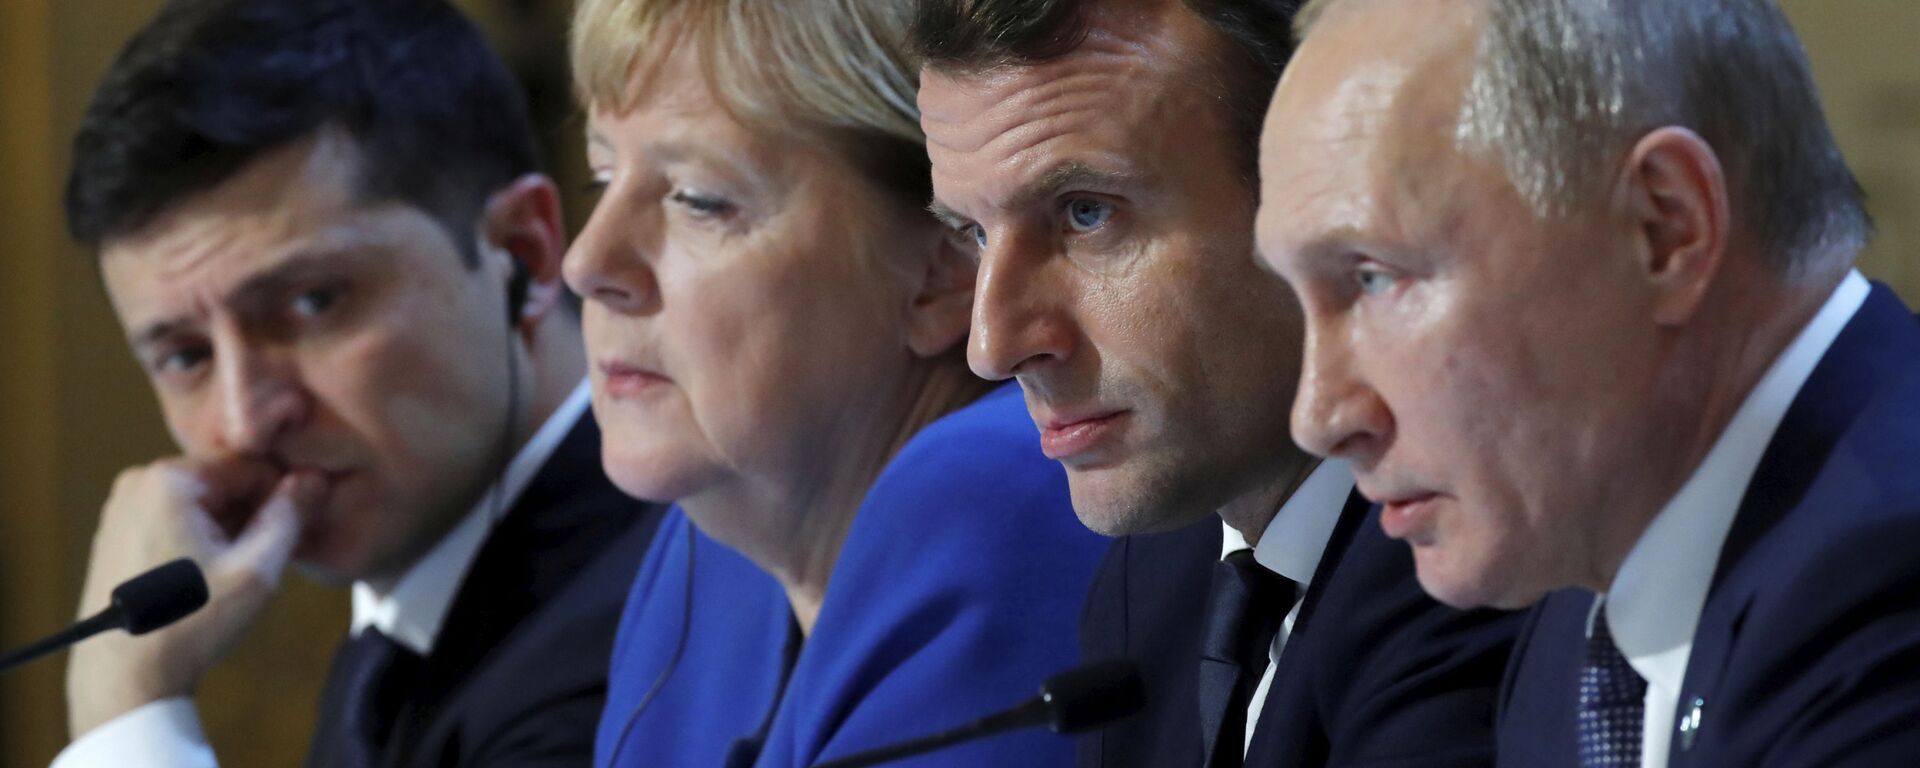 Los líderes del Cuarteto de Normandía: Volodímir Zelenski, Angela Merkel, Emmanuel Macron y Vladímir Putin - Sputnik Mundo, 1920, 07.12.2021